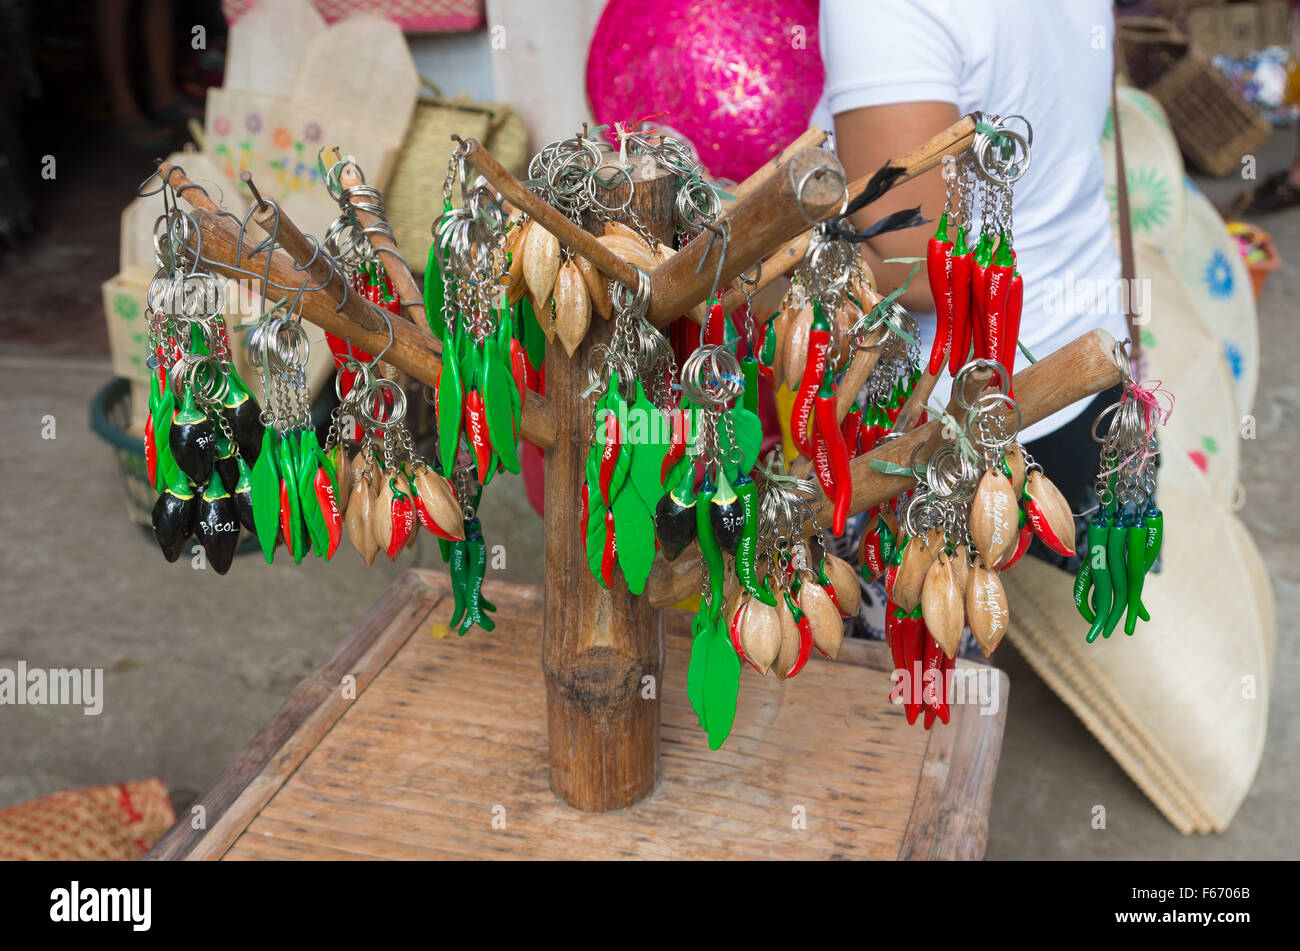 LEGAZPI, Philippinen - 1. Juni 2015: Traditionelle rote und grüne Chilischote Schlüsselanhänger Souvenirs in einem lokalen Souvenirshop. Siling Stockfoto